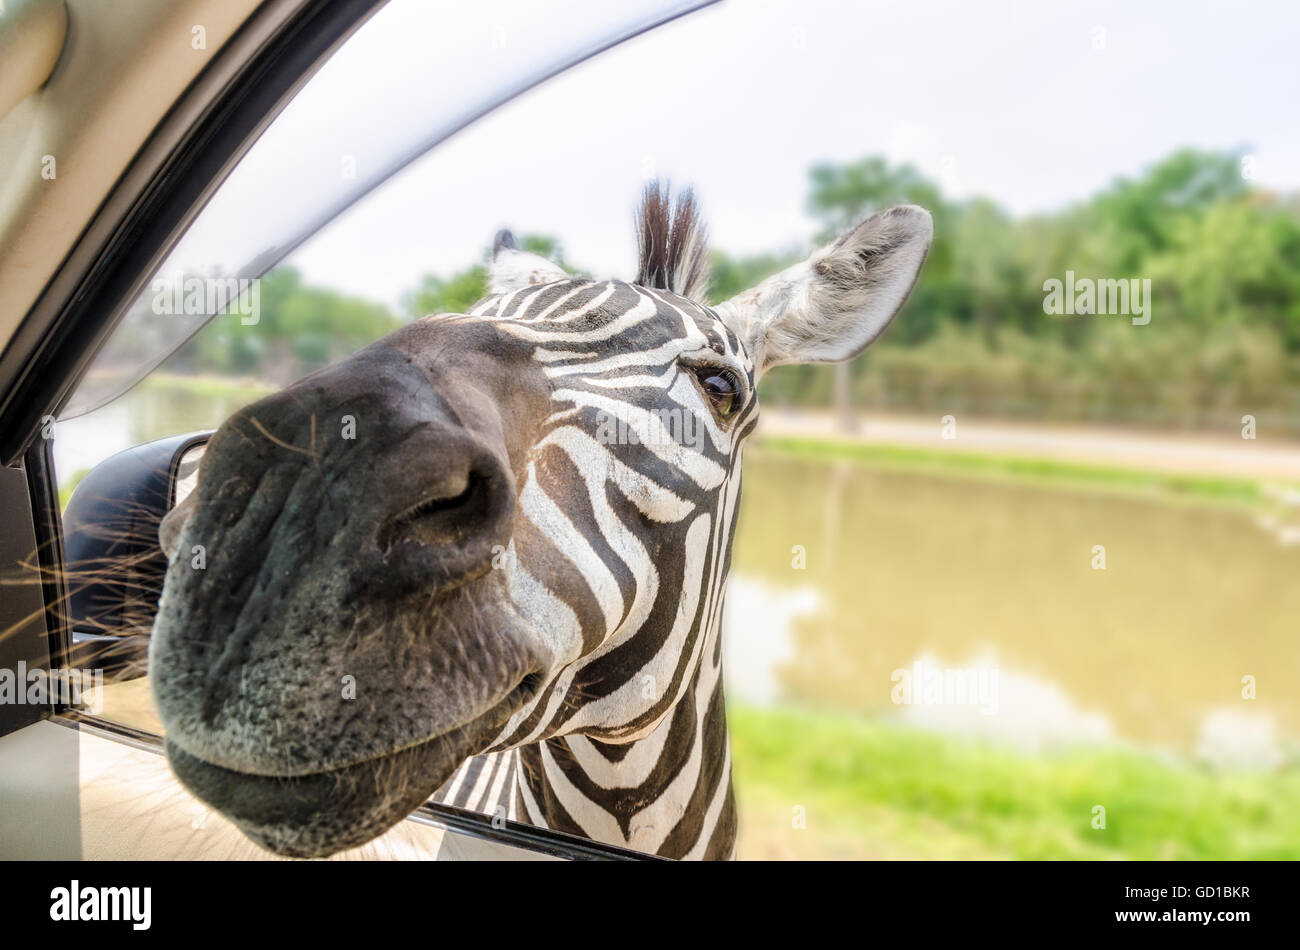 Le pianure Zebra, comune o Zebra Equus quagga depositata una testata in vettura di turisti per cibo Foto Stock